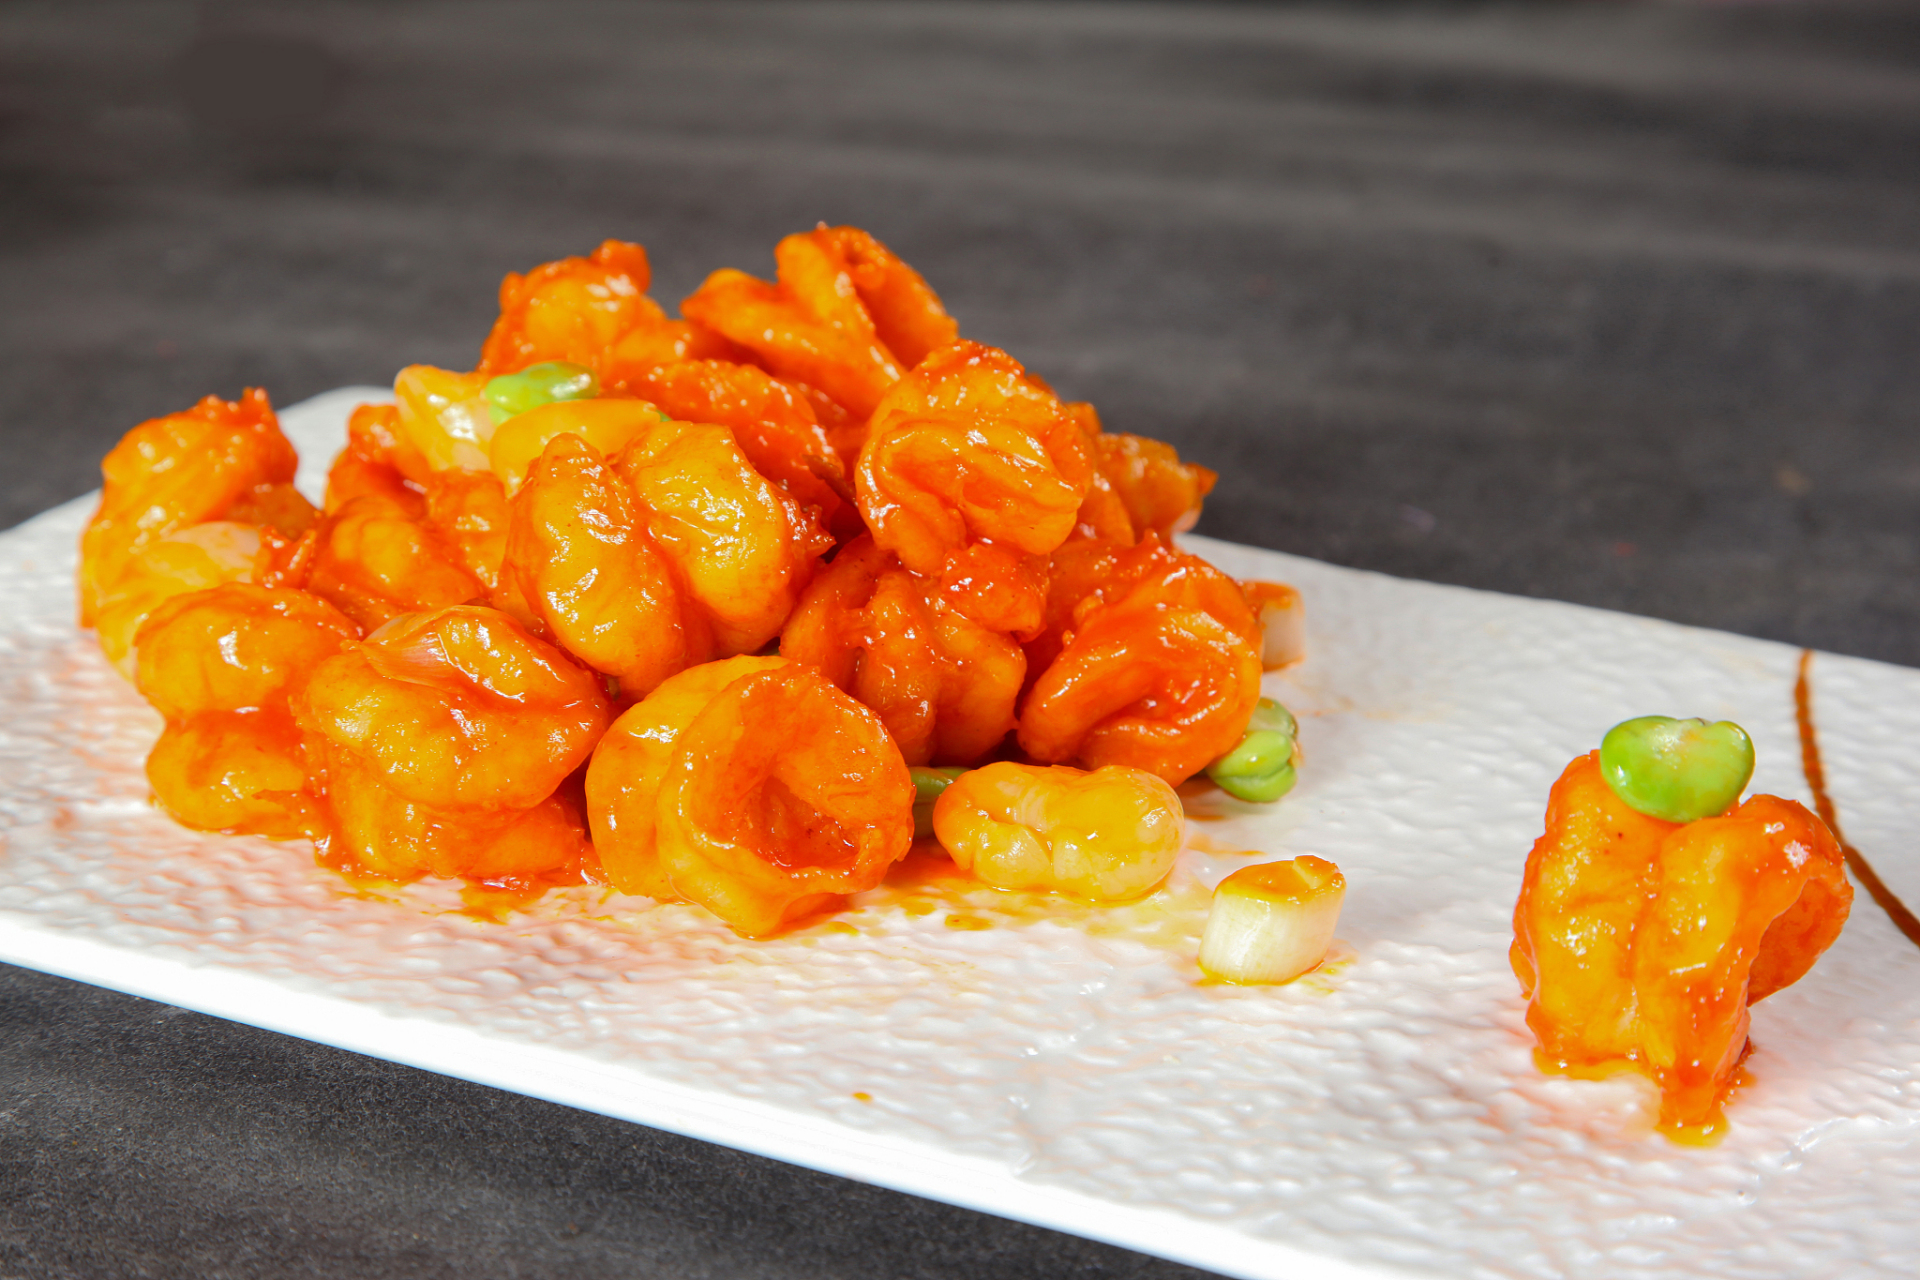 宫保虾球是一道融合了川菜和海鲜的美食佳肴